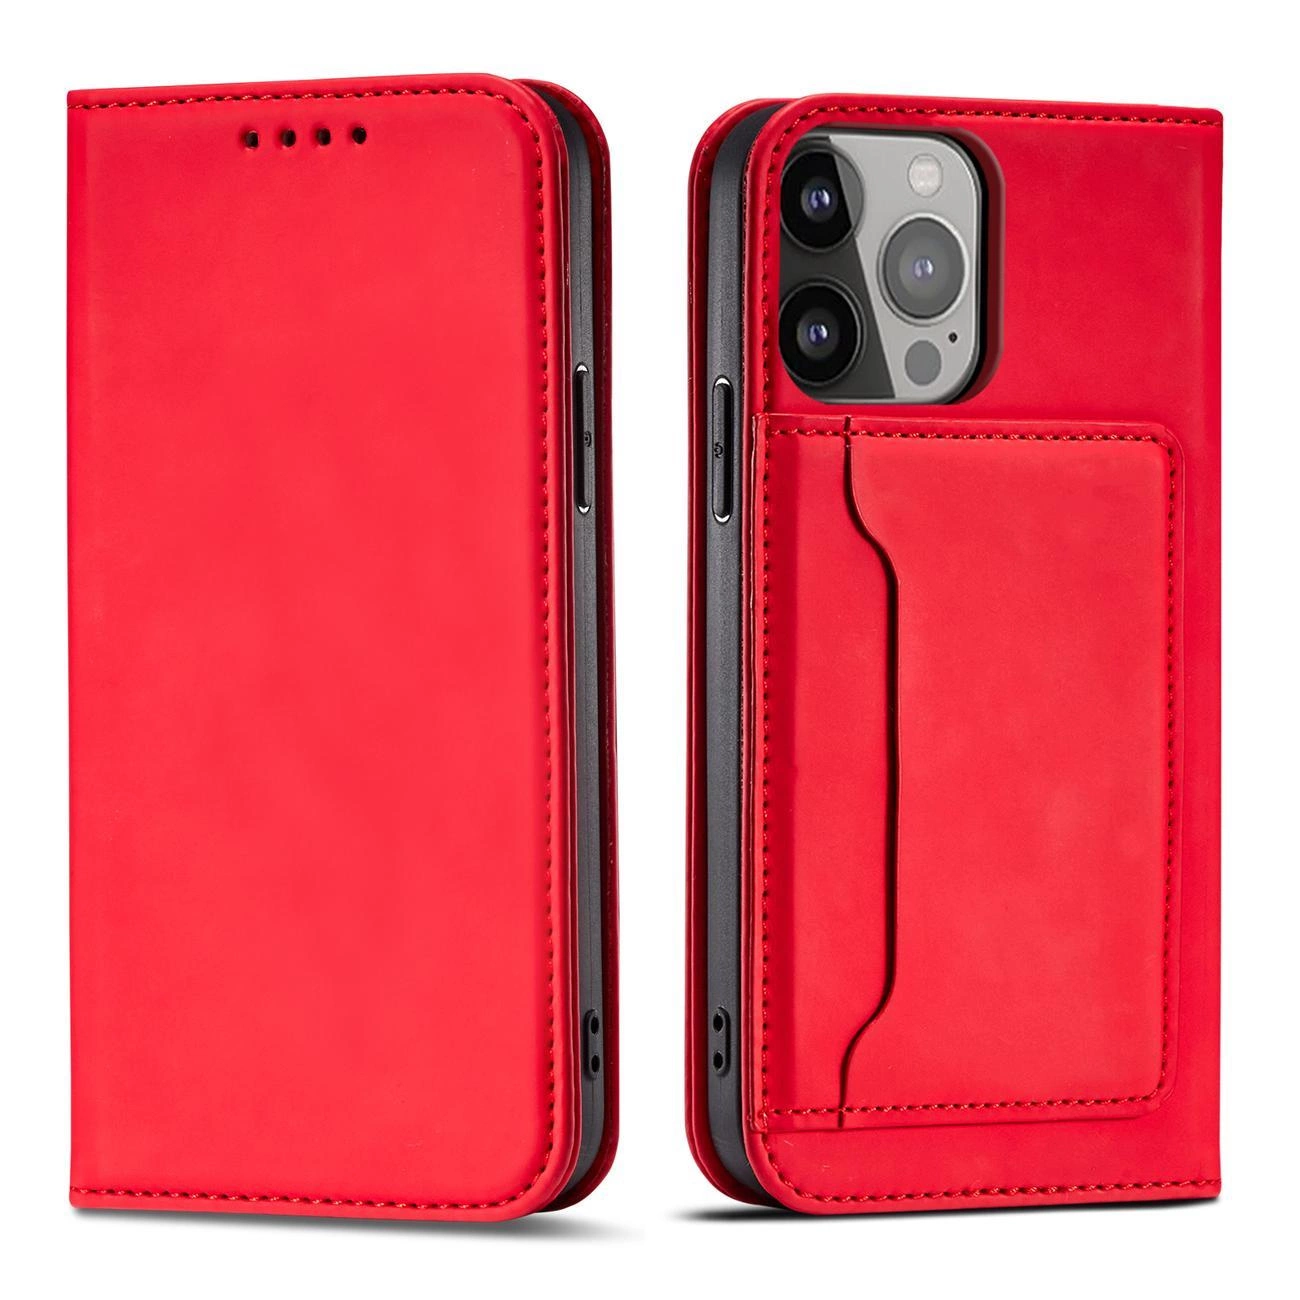 Hurtel Magnetové pouzdro na karty iPhone 14 Pro s flipovým krytem, peněženkou a stojánkem červené barvy